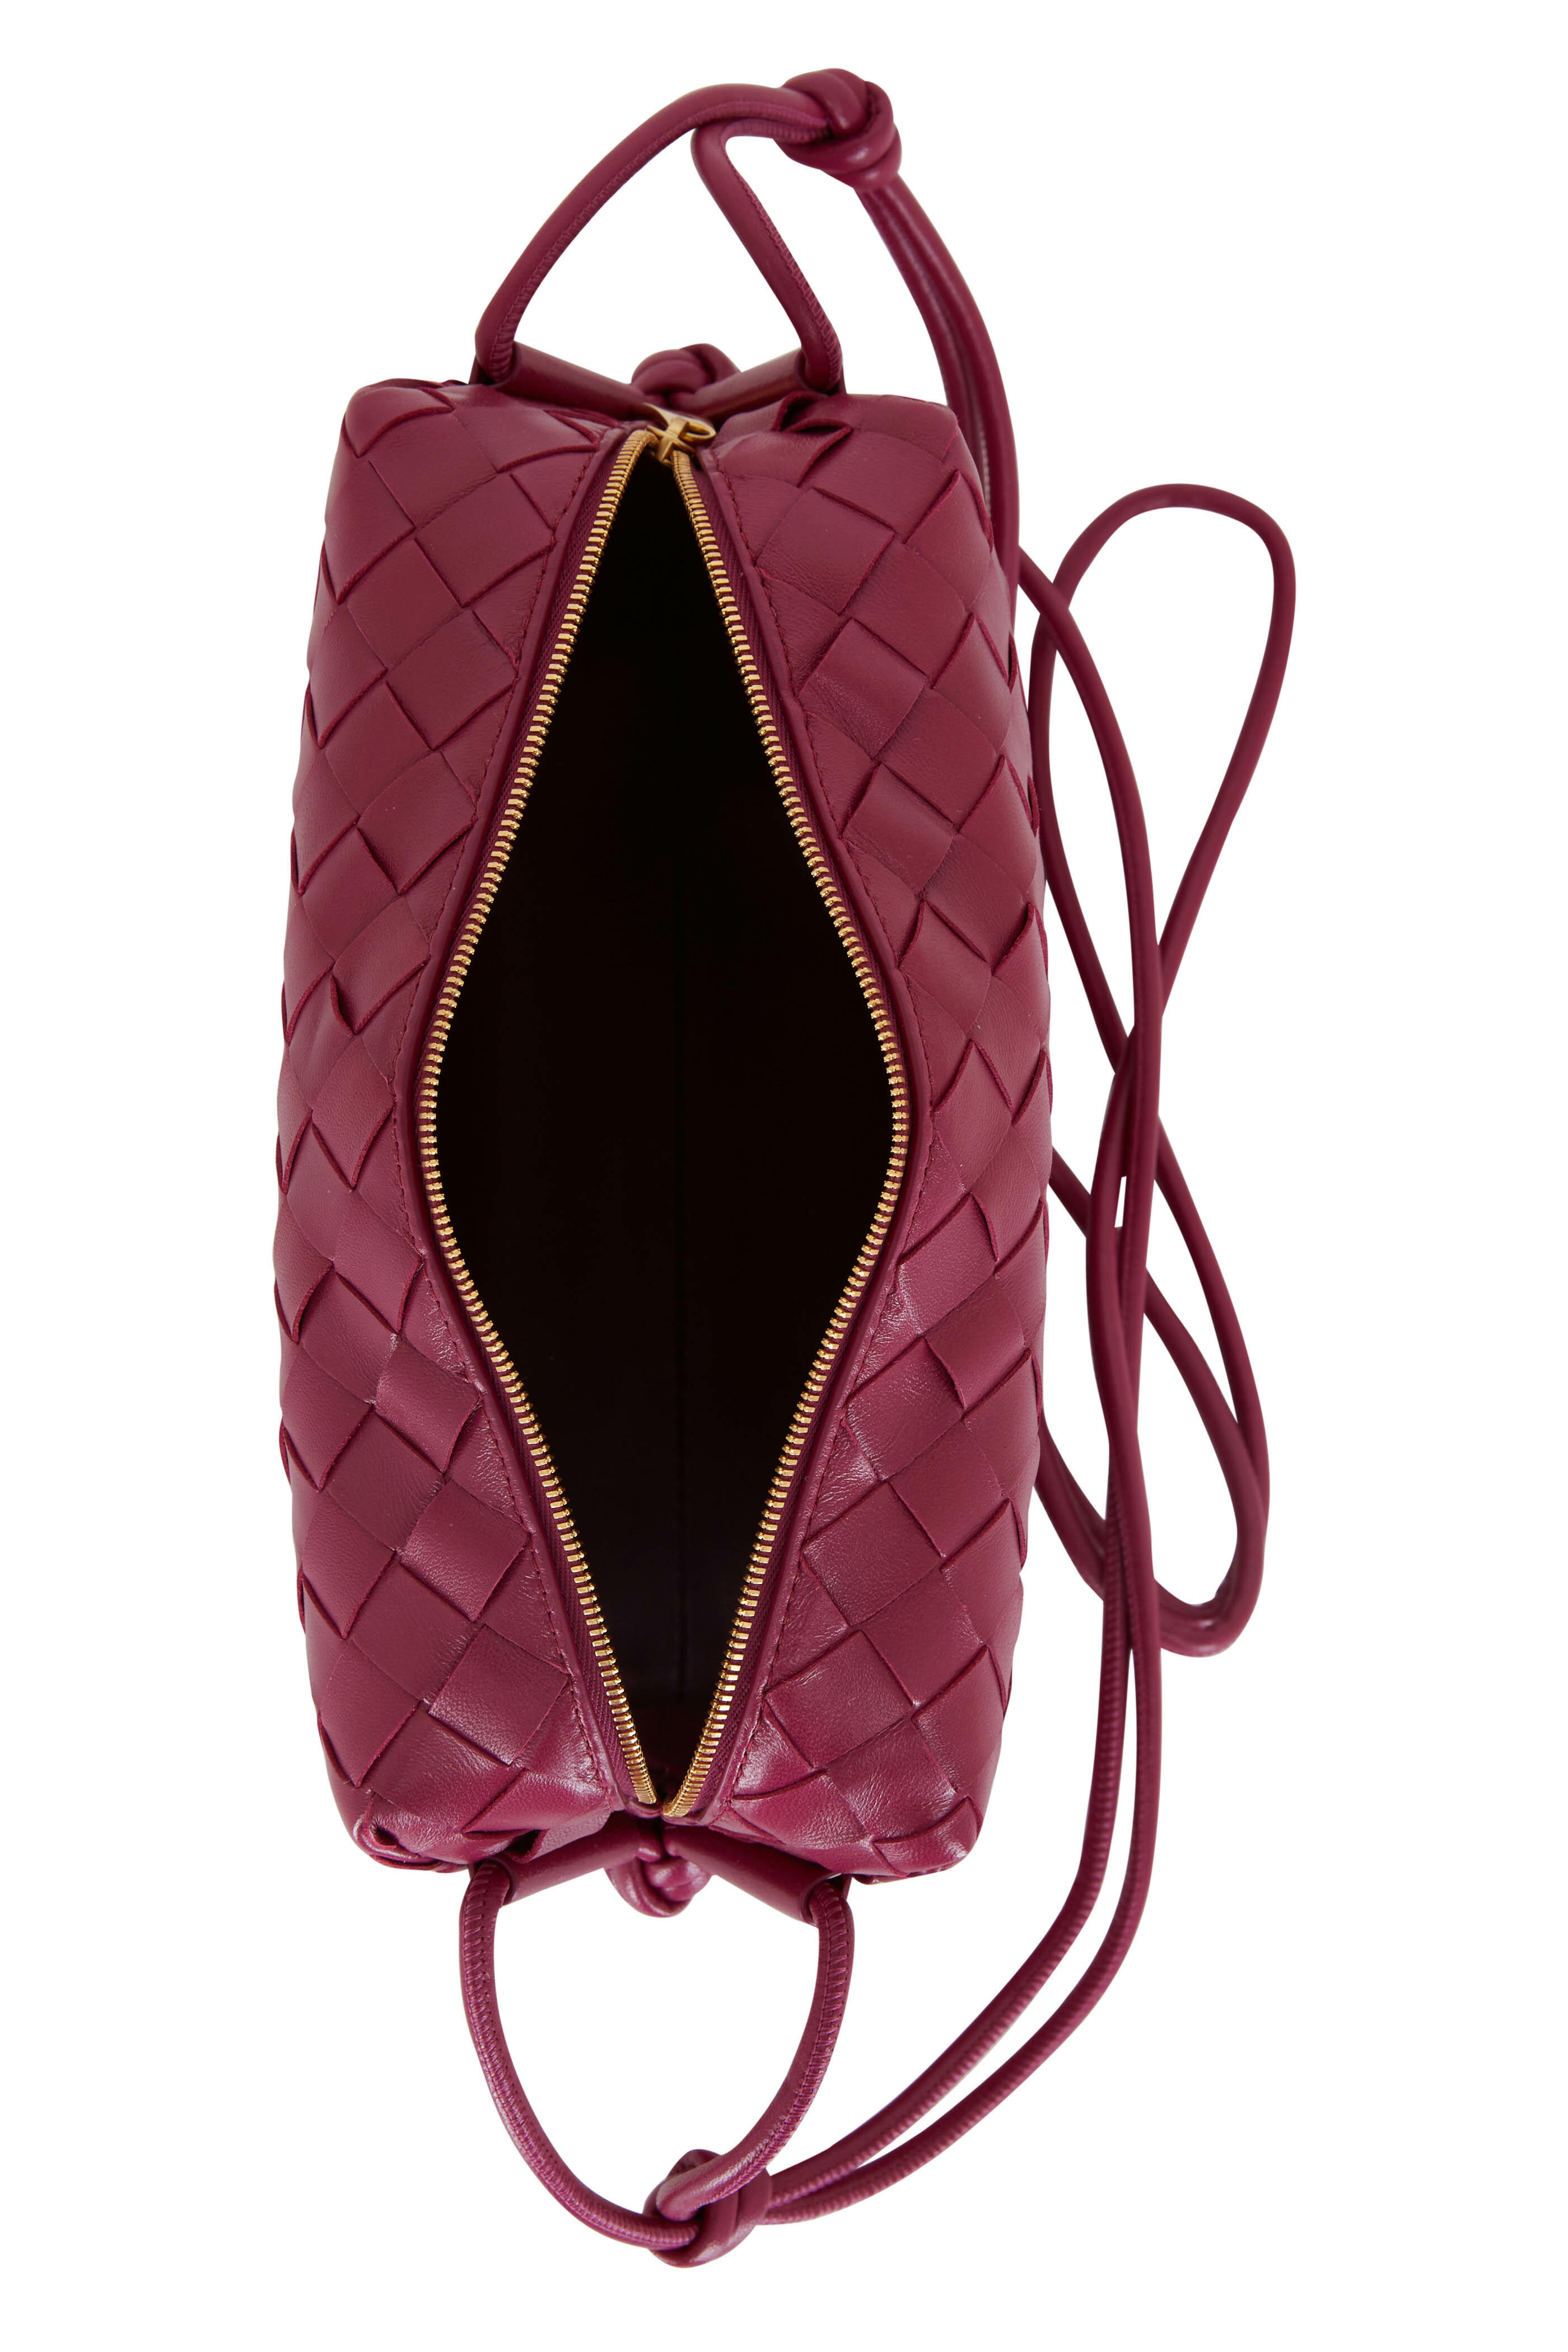 Bottega Veneta Women's Mini Crossbody Bag